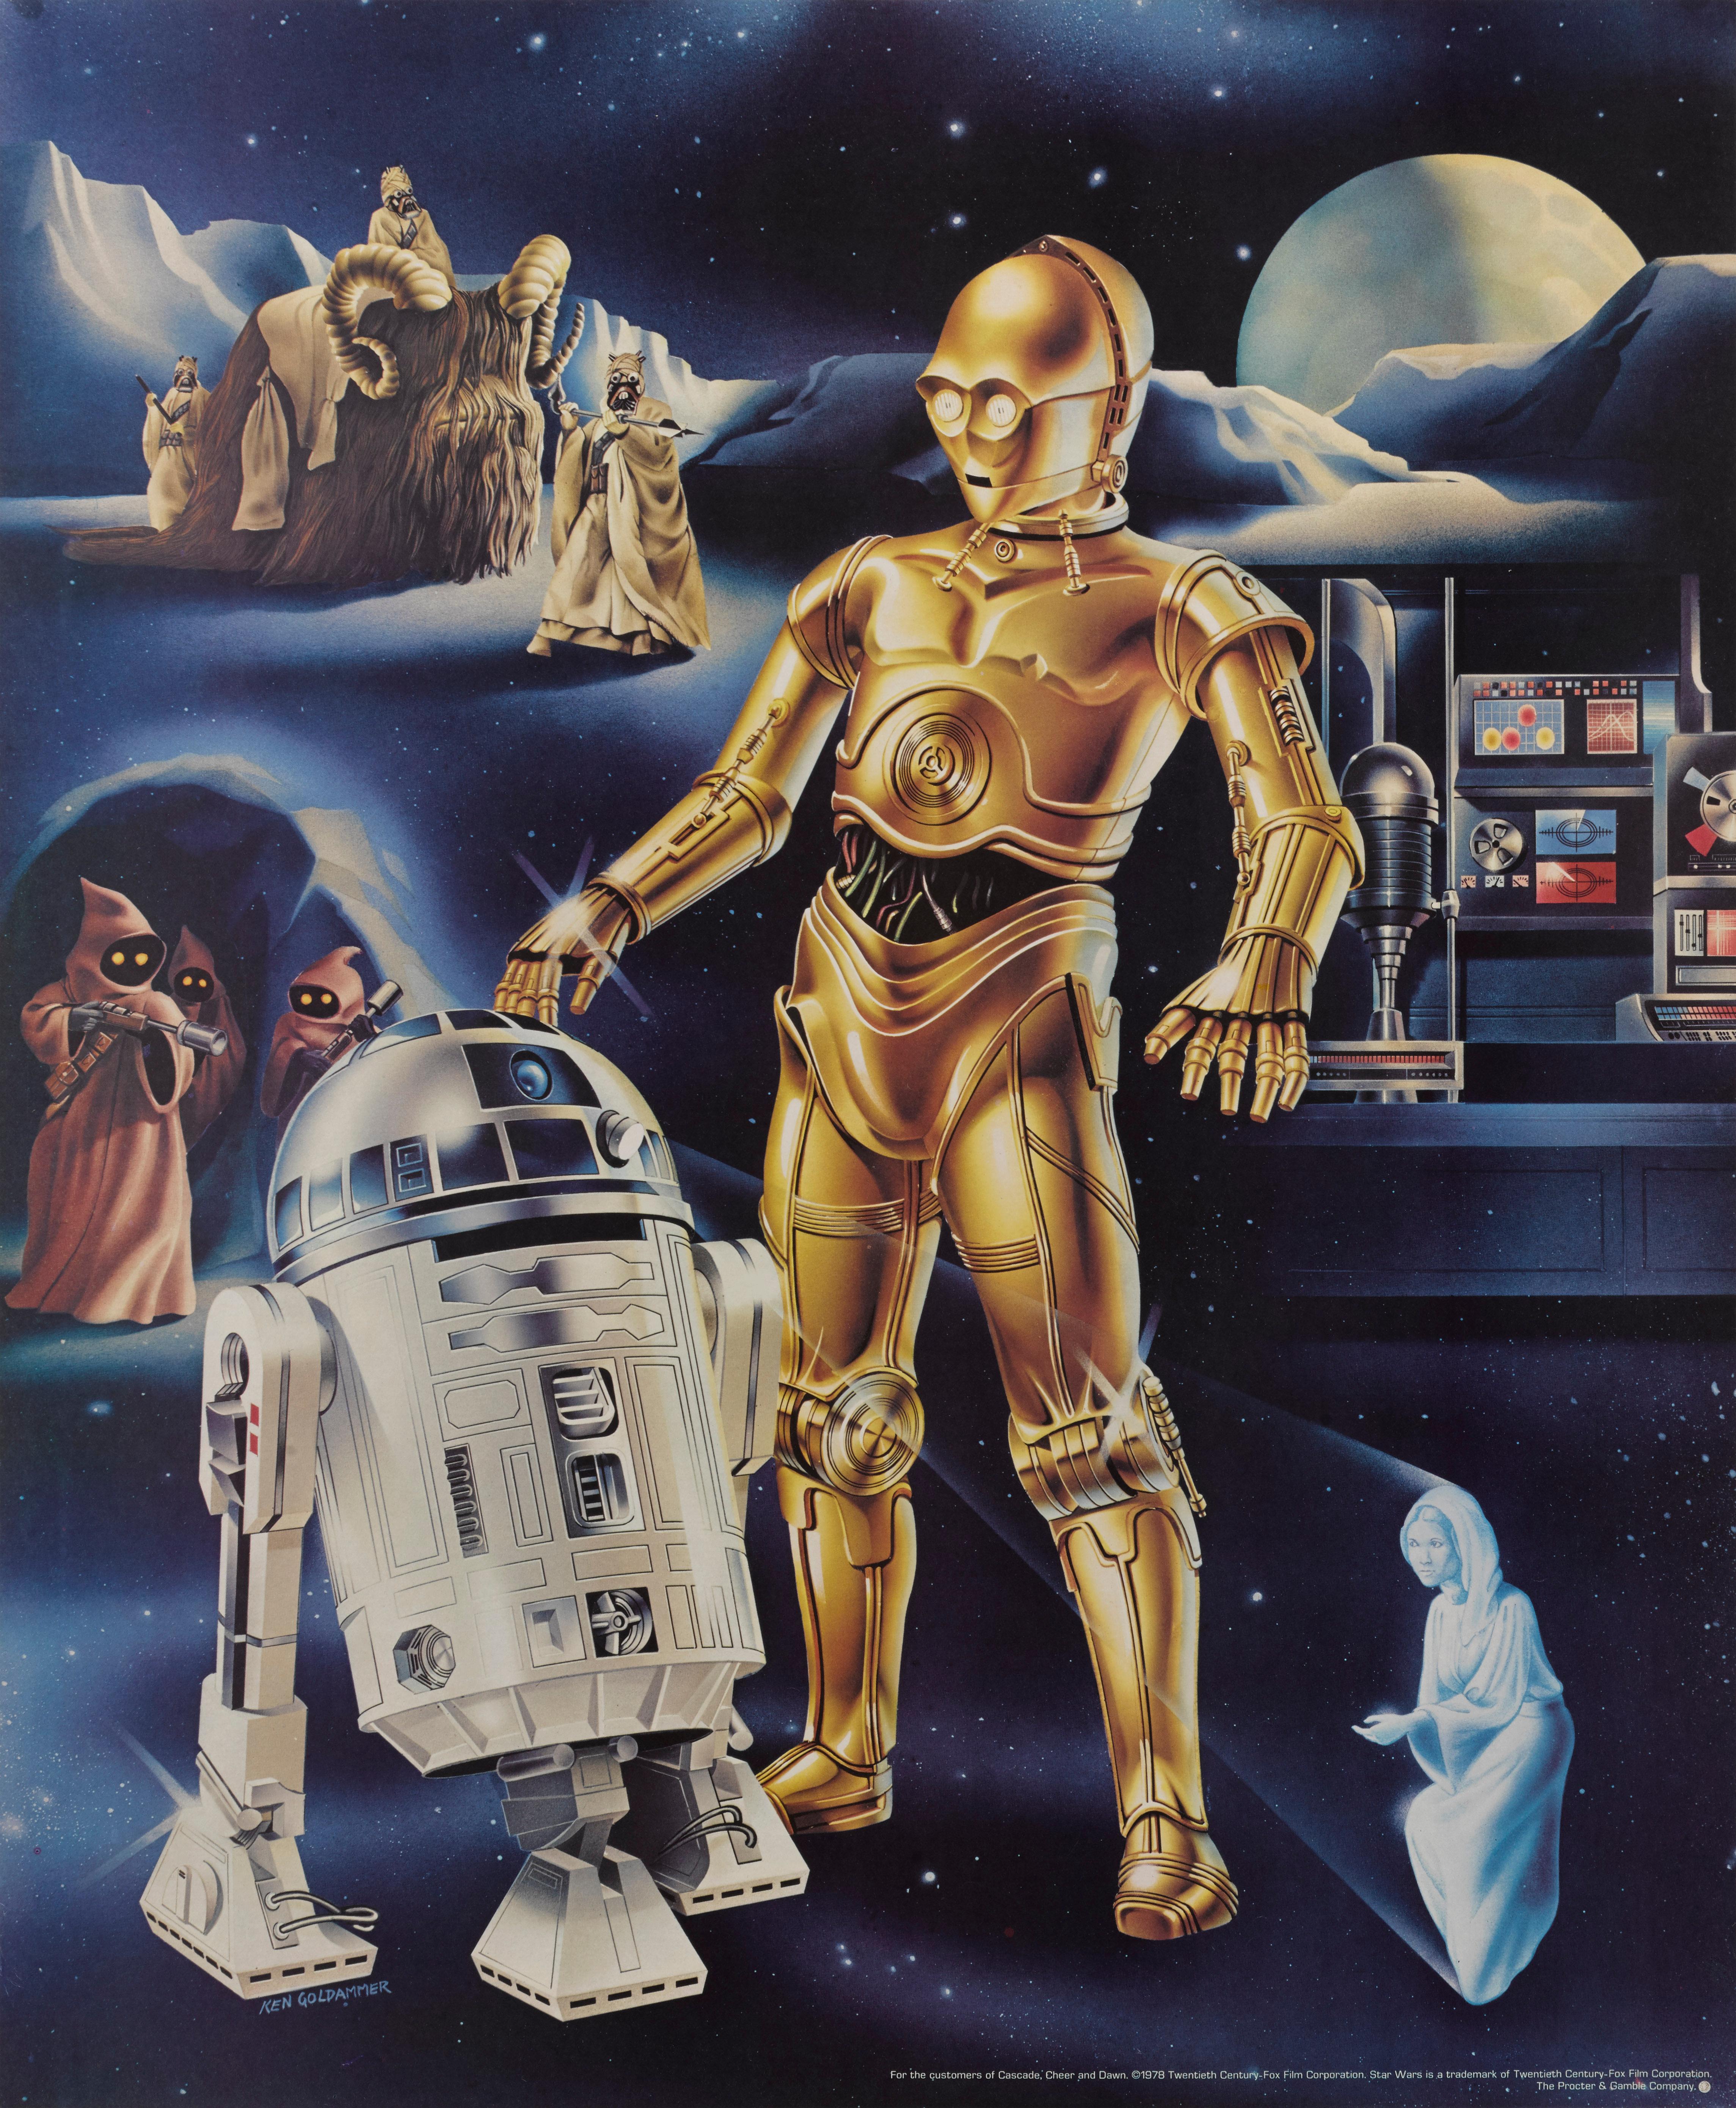 3 amerikanische Spezialplakate von Proctor & Gamble aus dem Jahr 1978, die in Verbindung mit dem Film Star Wars, 1977, erstellt wurden.
Der Film war 1978 noch in den Kinos zu sehen.
Der Film wurde unter der Regie von George Lucas gedreht und mit